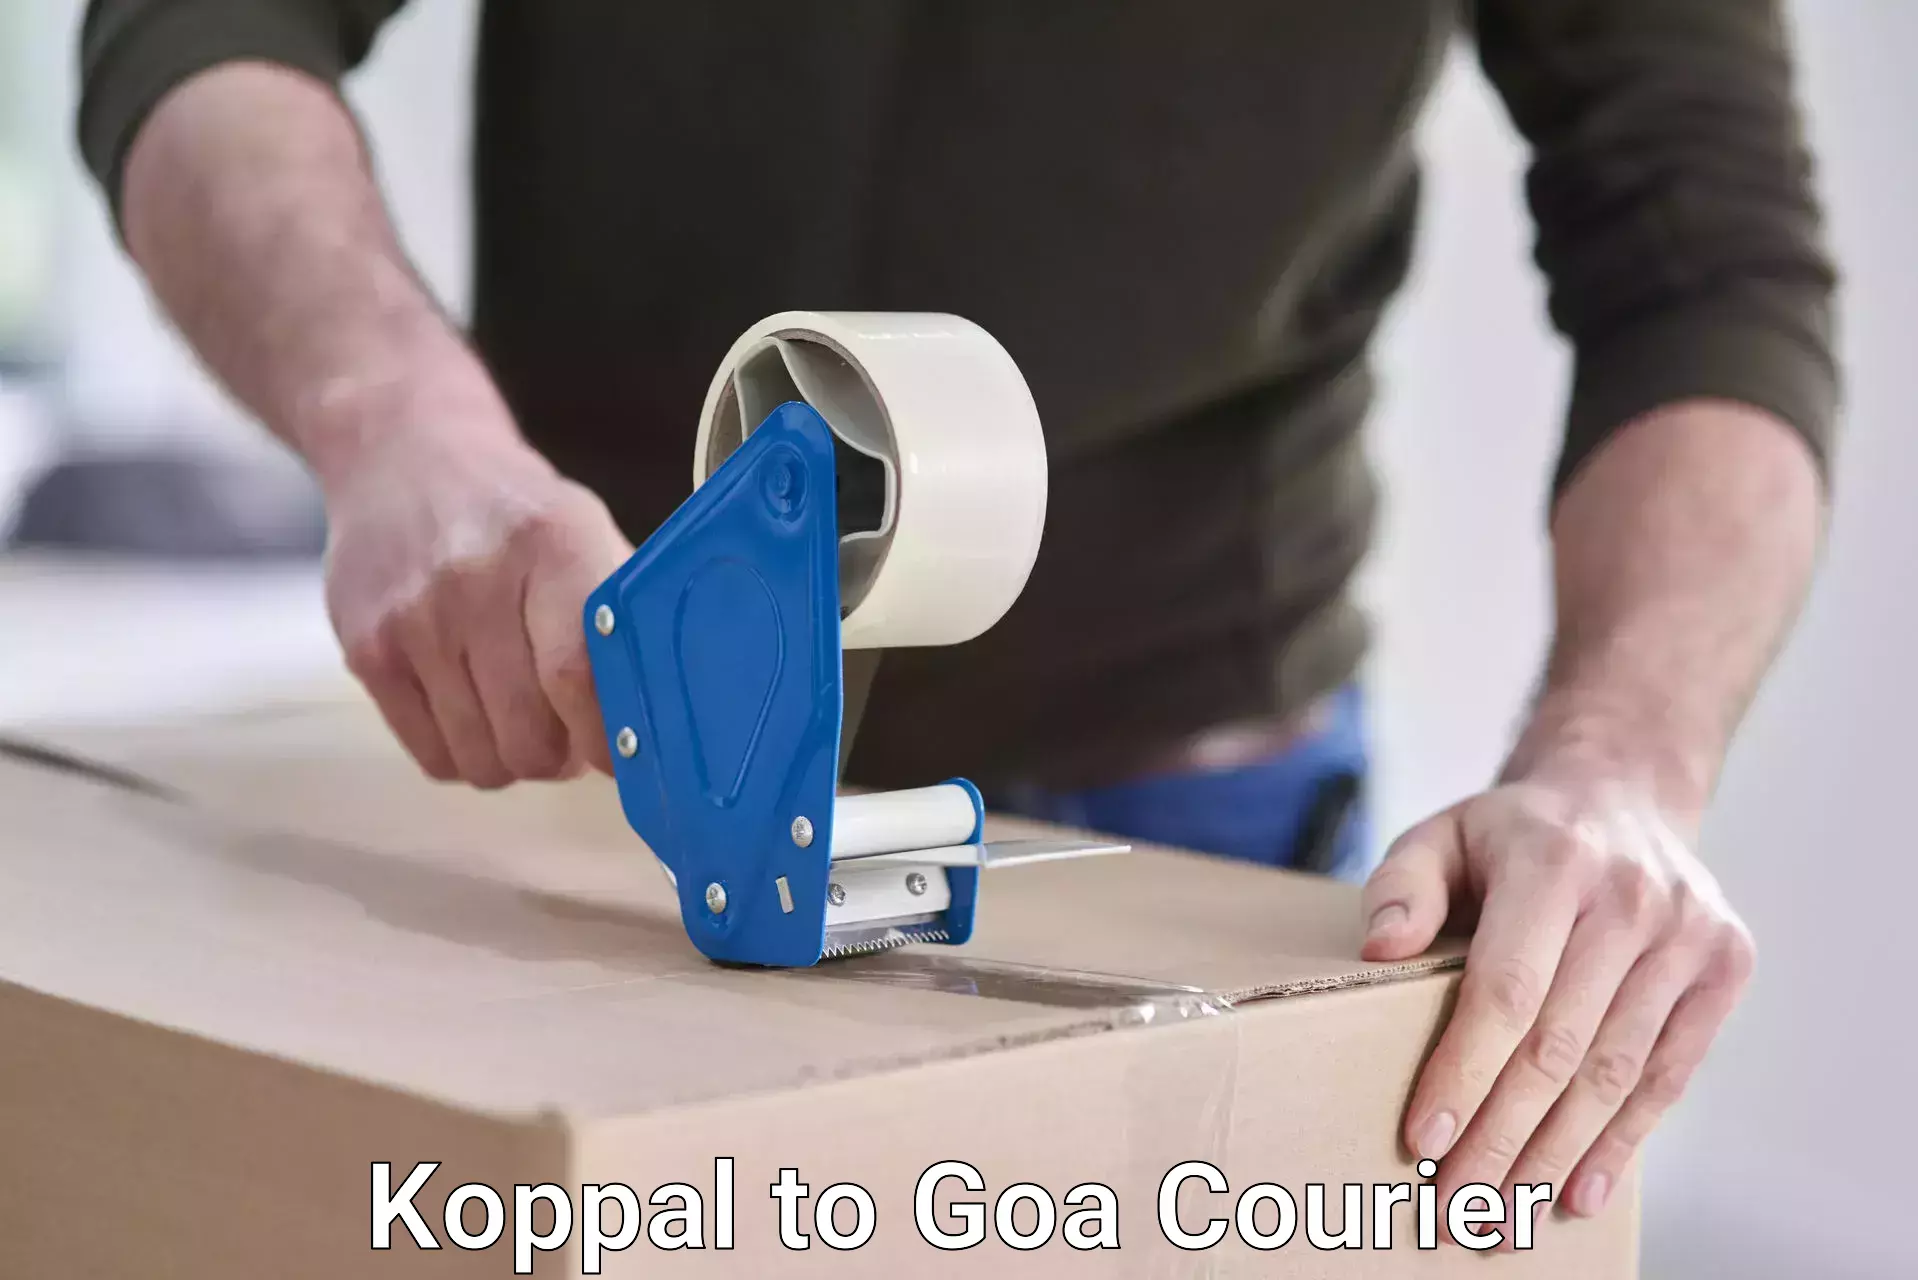 High-capacity parcel service Koppal to Goa